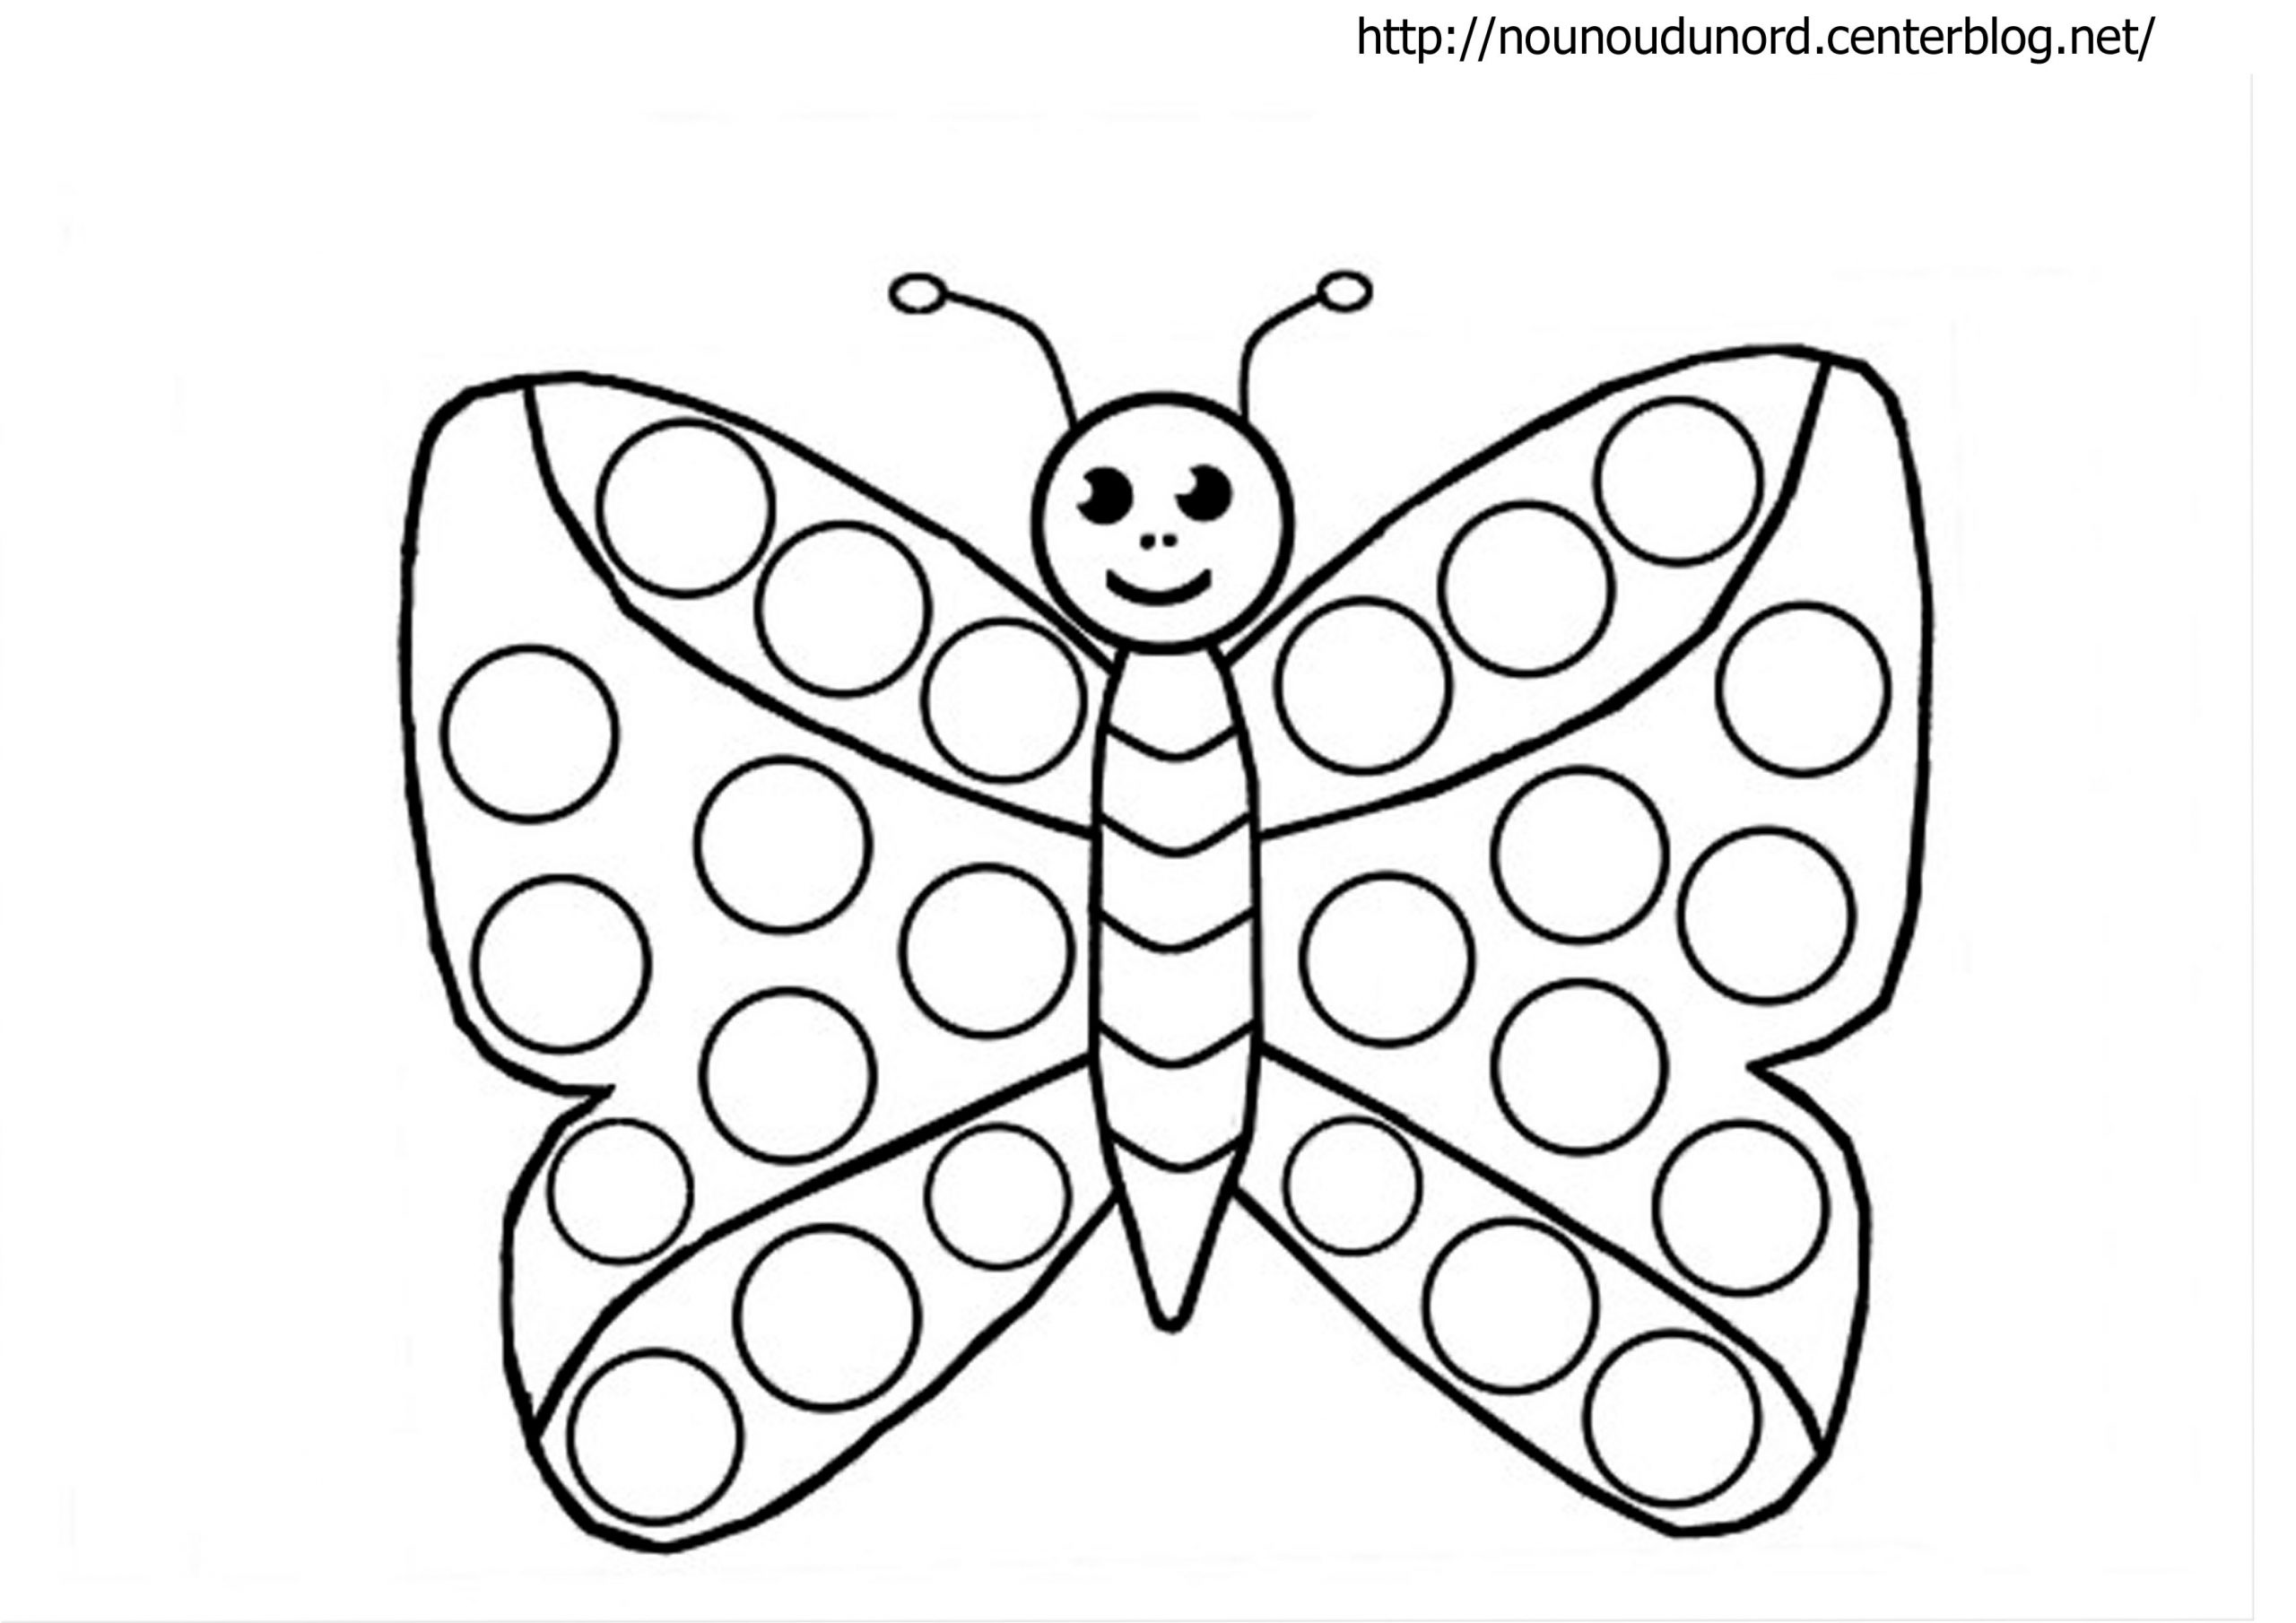 Papillon #32 (Animaux) – Coloriages À Imprimer dedans Dessin A Imprimer Papillon Gratuit